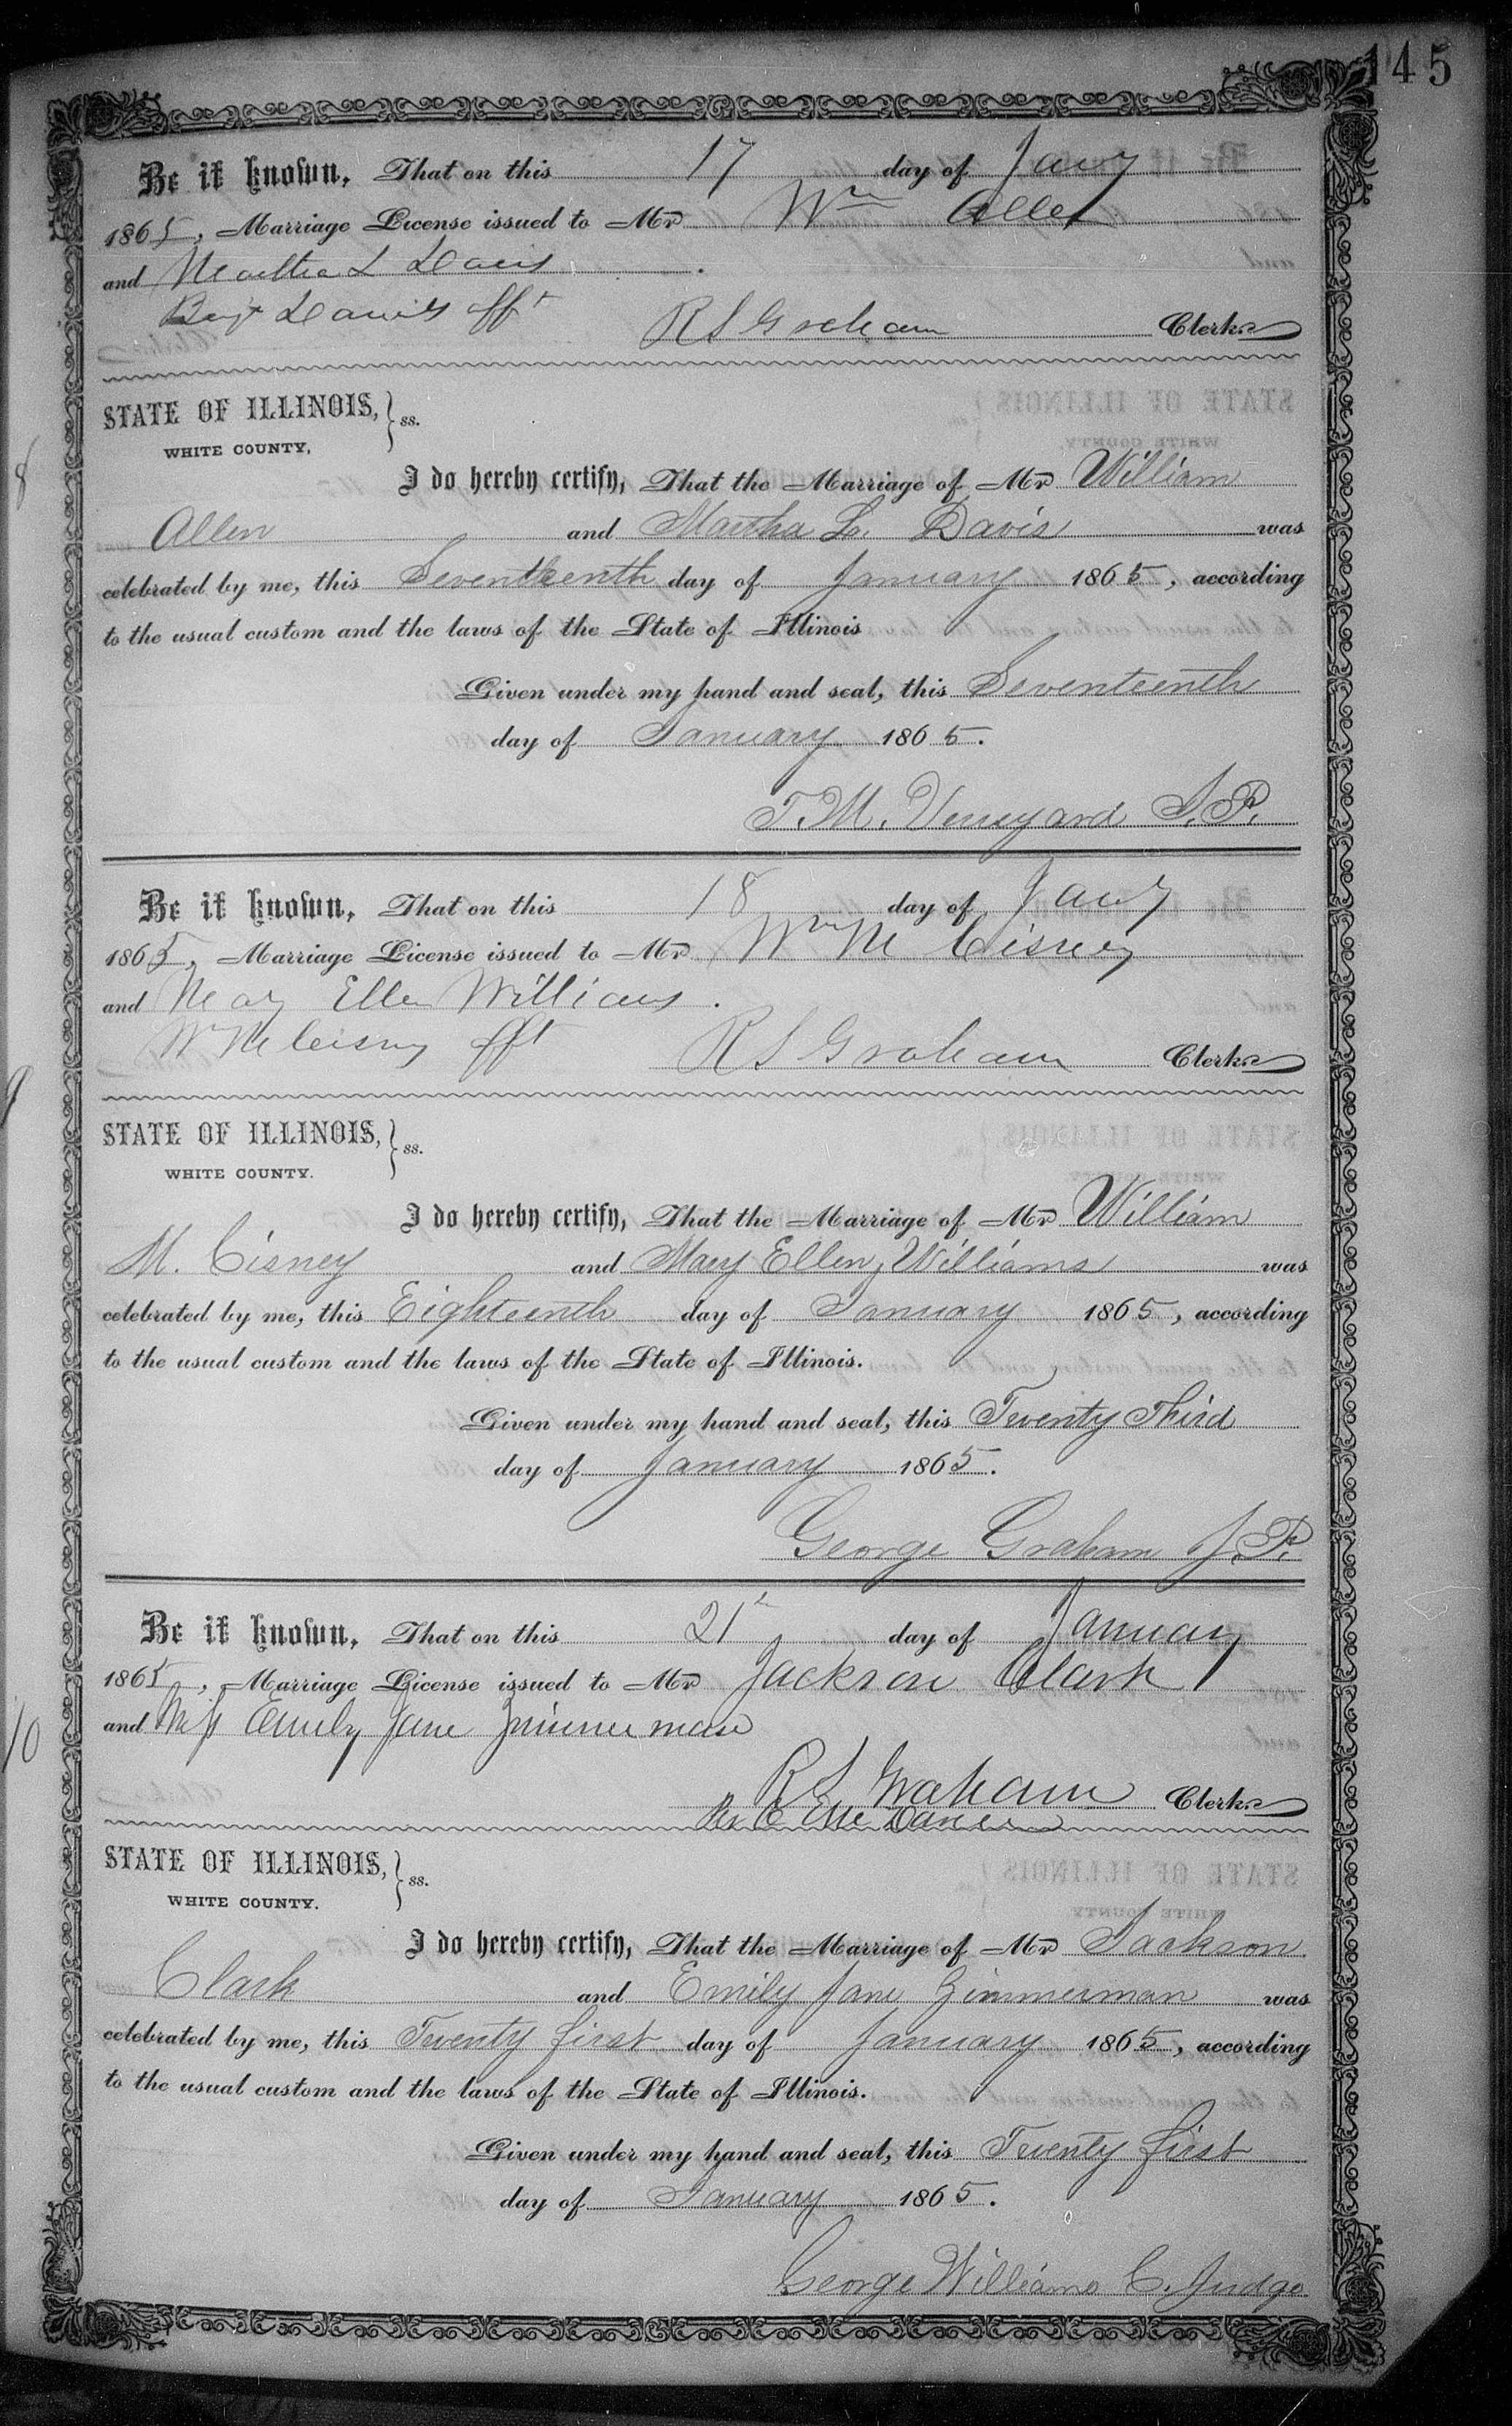 Marriage, Martha Louise Davis to William Allen, 1865, White Co IL